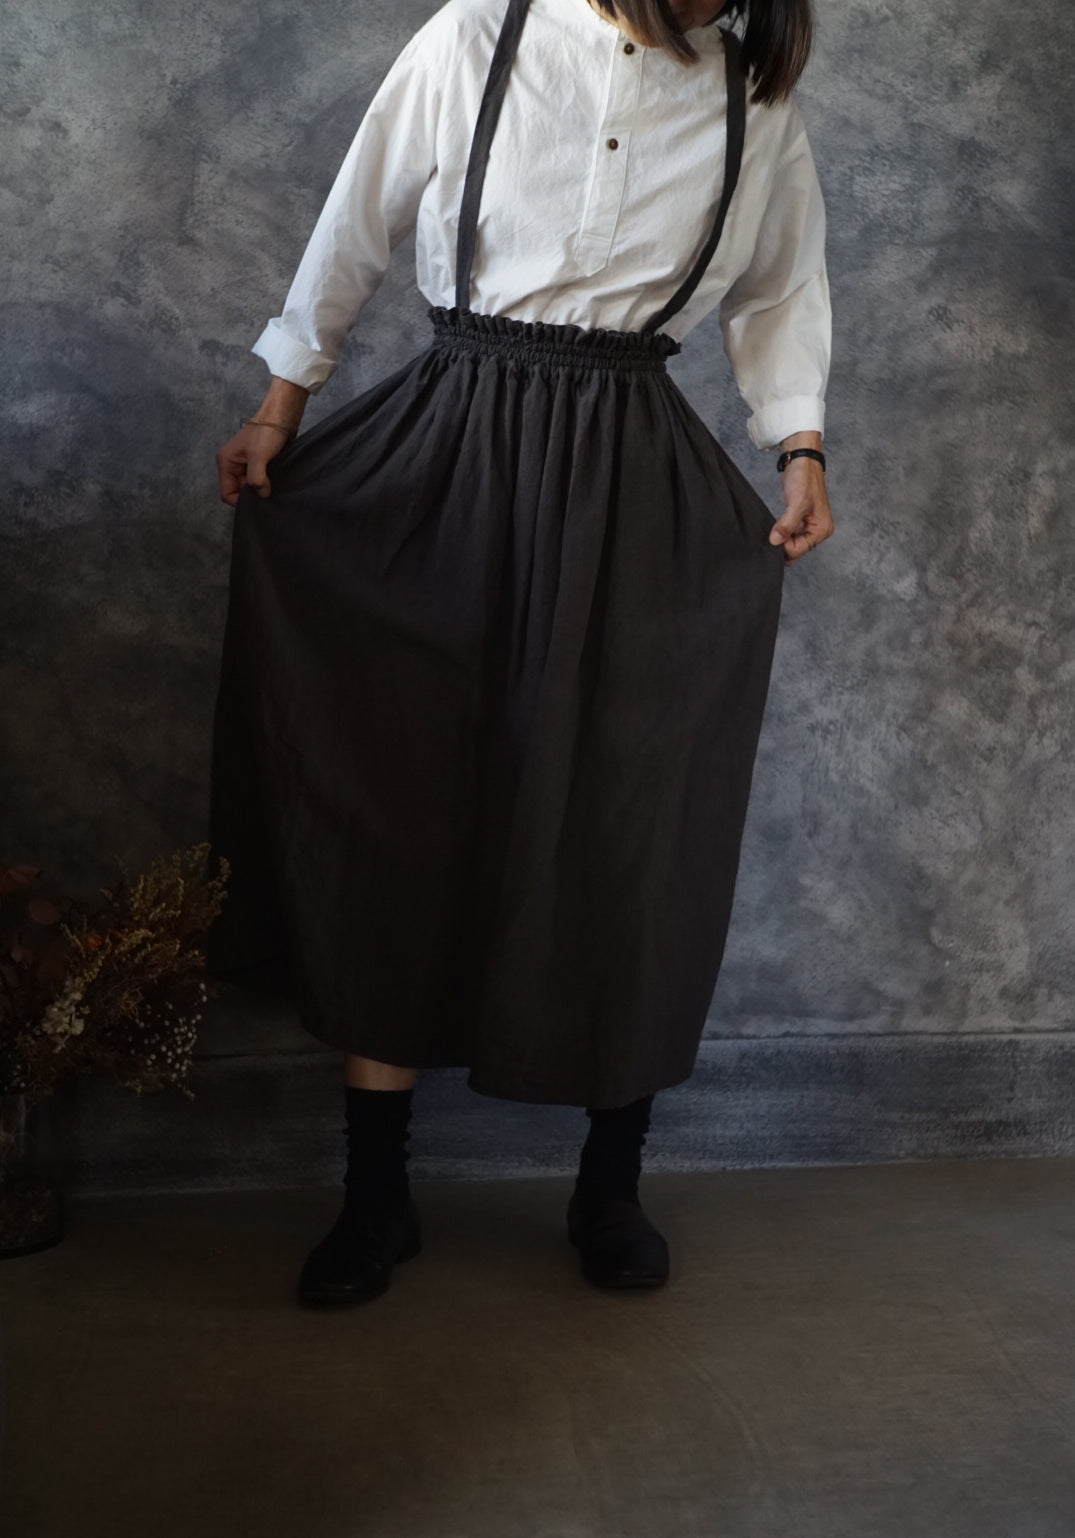 overalls skirt